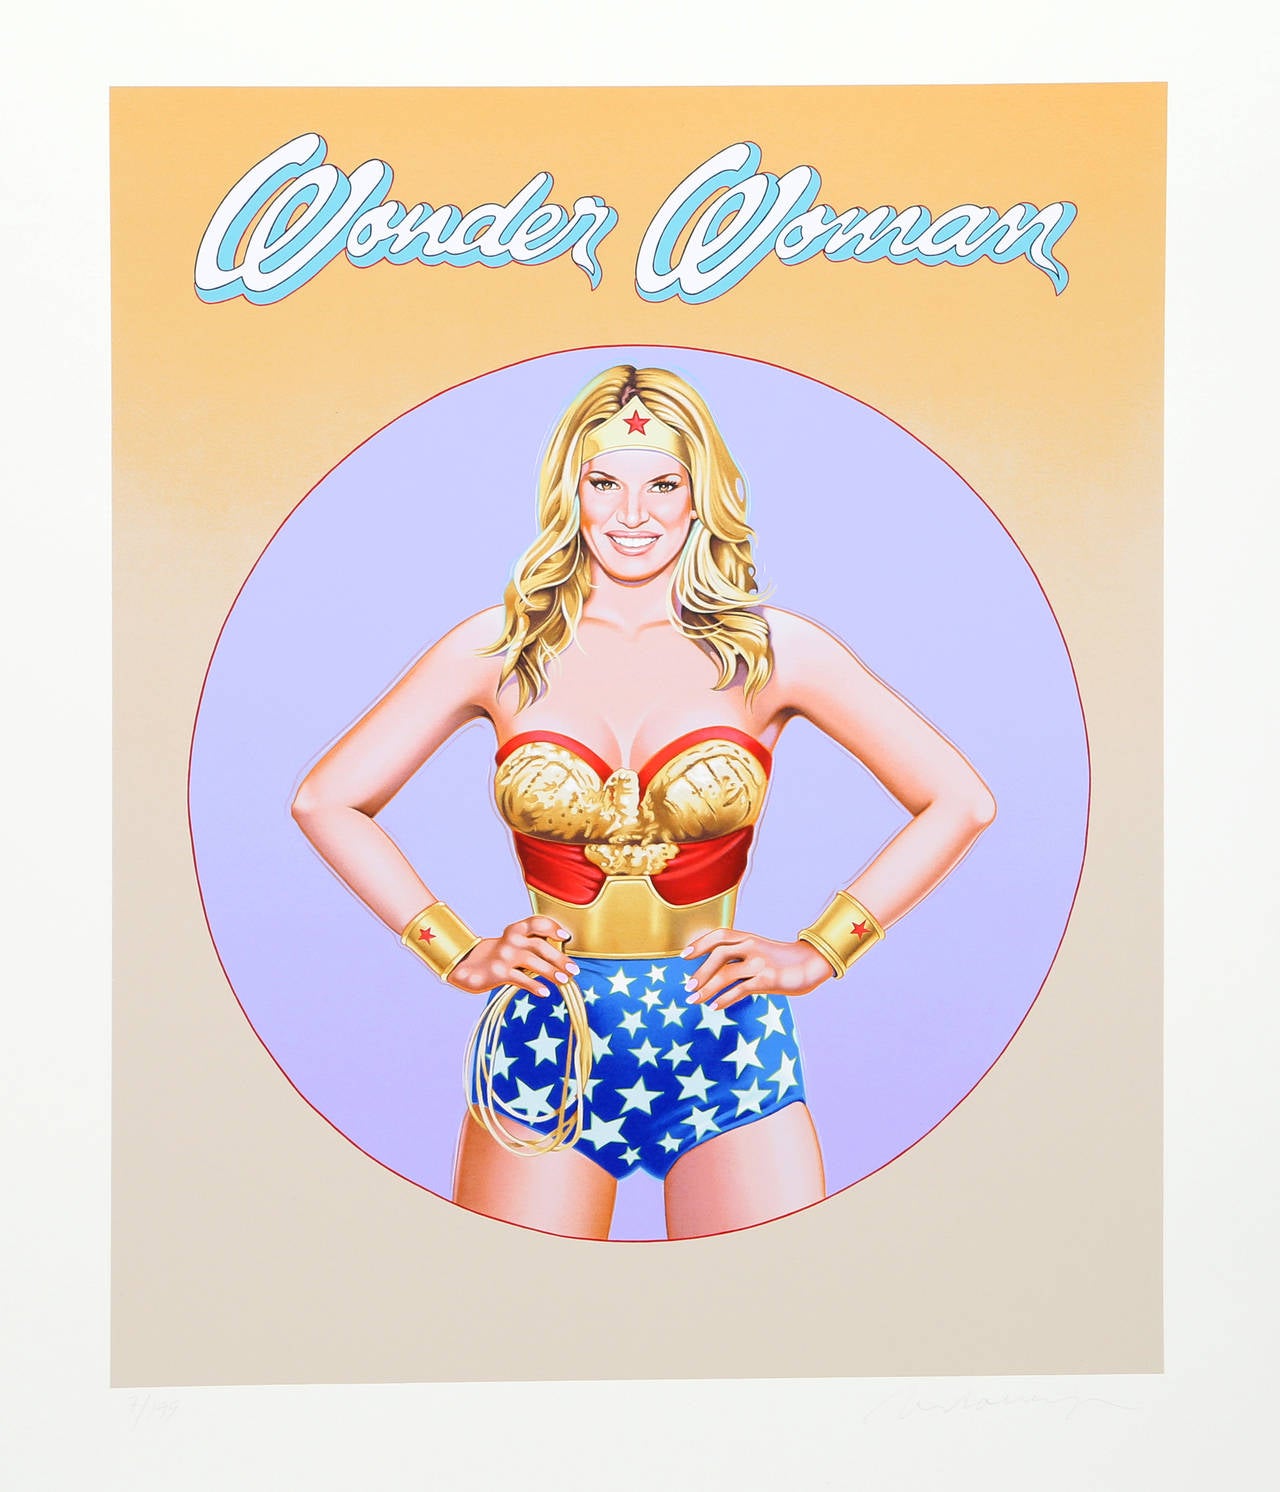 Artiste : Mel Ramos, américain (1935 - )
Titre : Wonder Woman II
Année : 2010
Médium : Lithographie, signée et numérotée au crayon
Edition : 199
Taille : 35,8 in. x 29,5 in. (90,93 cm x 74,93 cm)